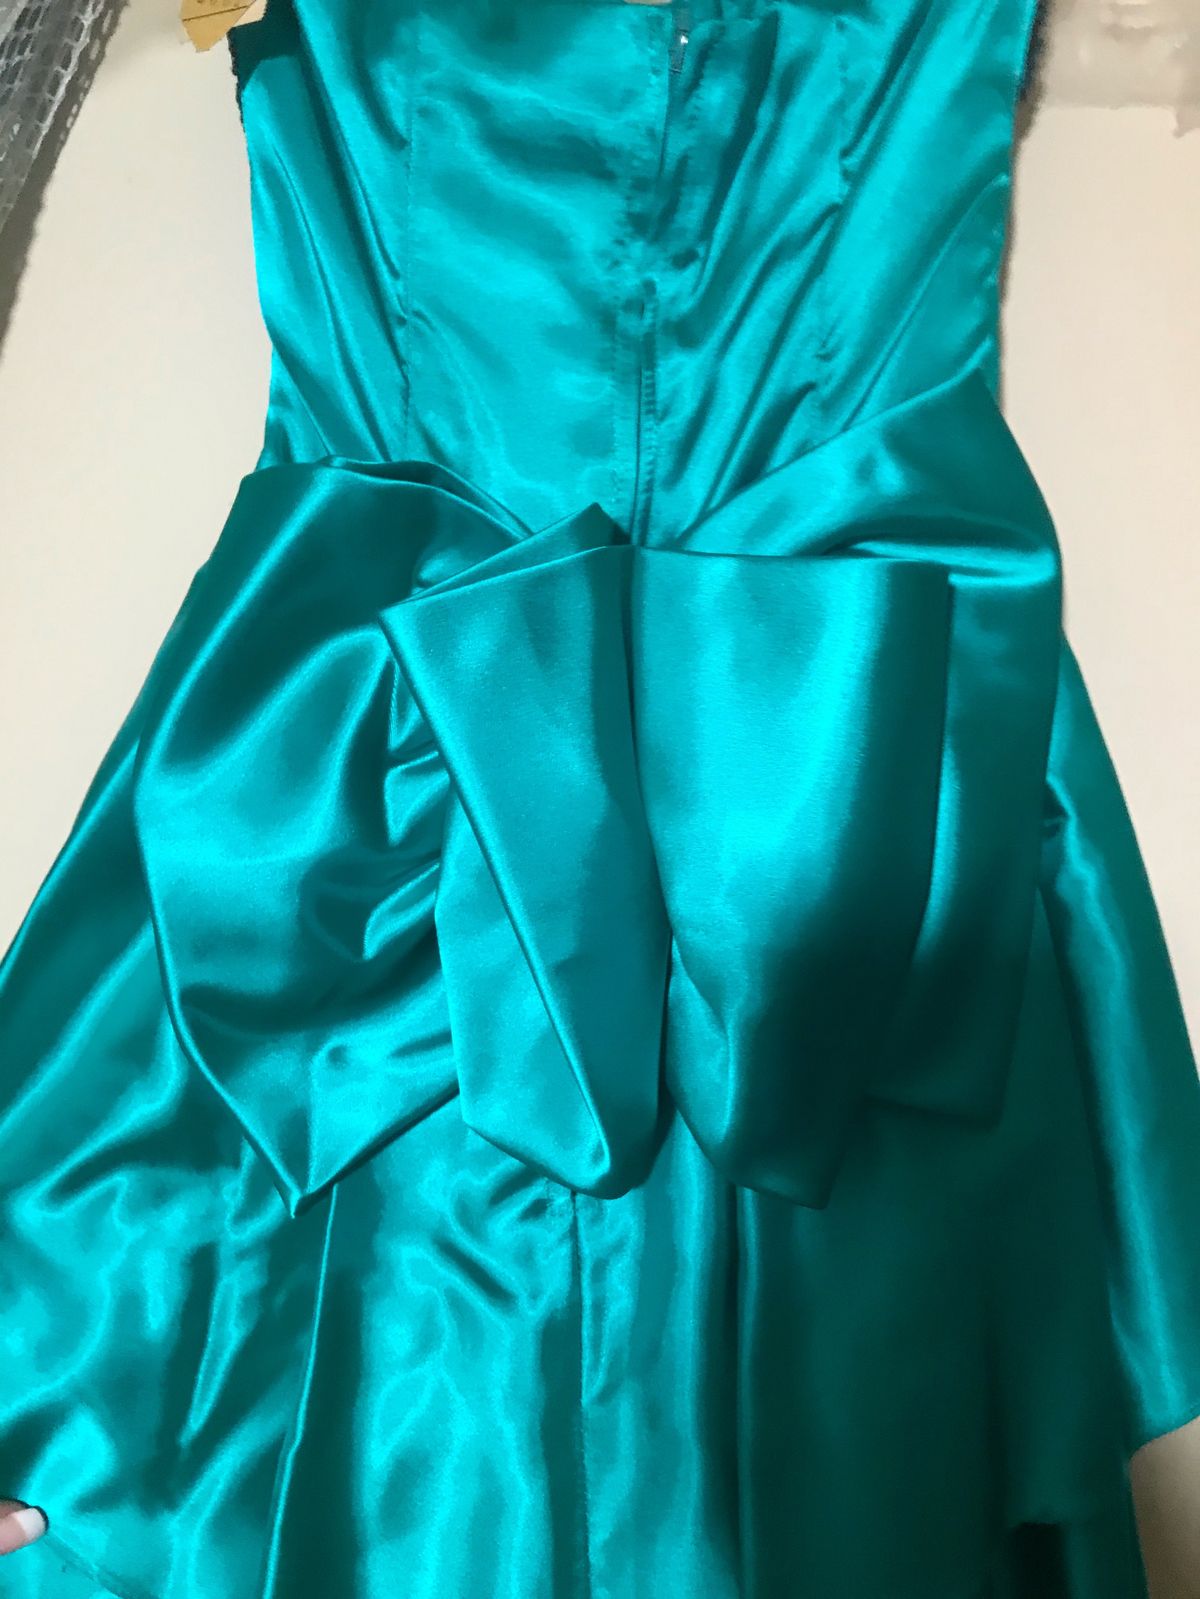 Zum Zum Size 4 Prom Sequined Green Cocktail Dress on Queenly